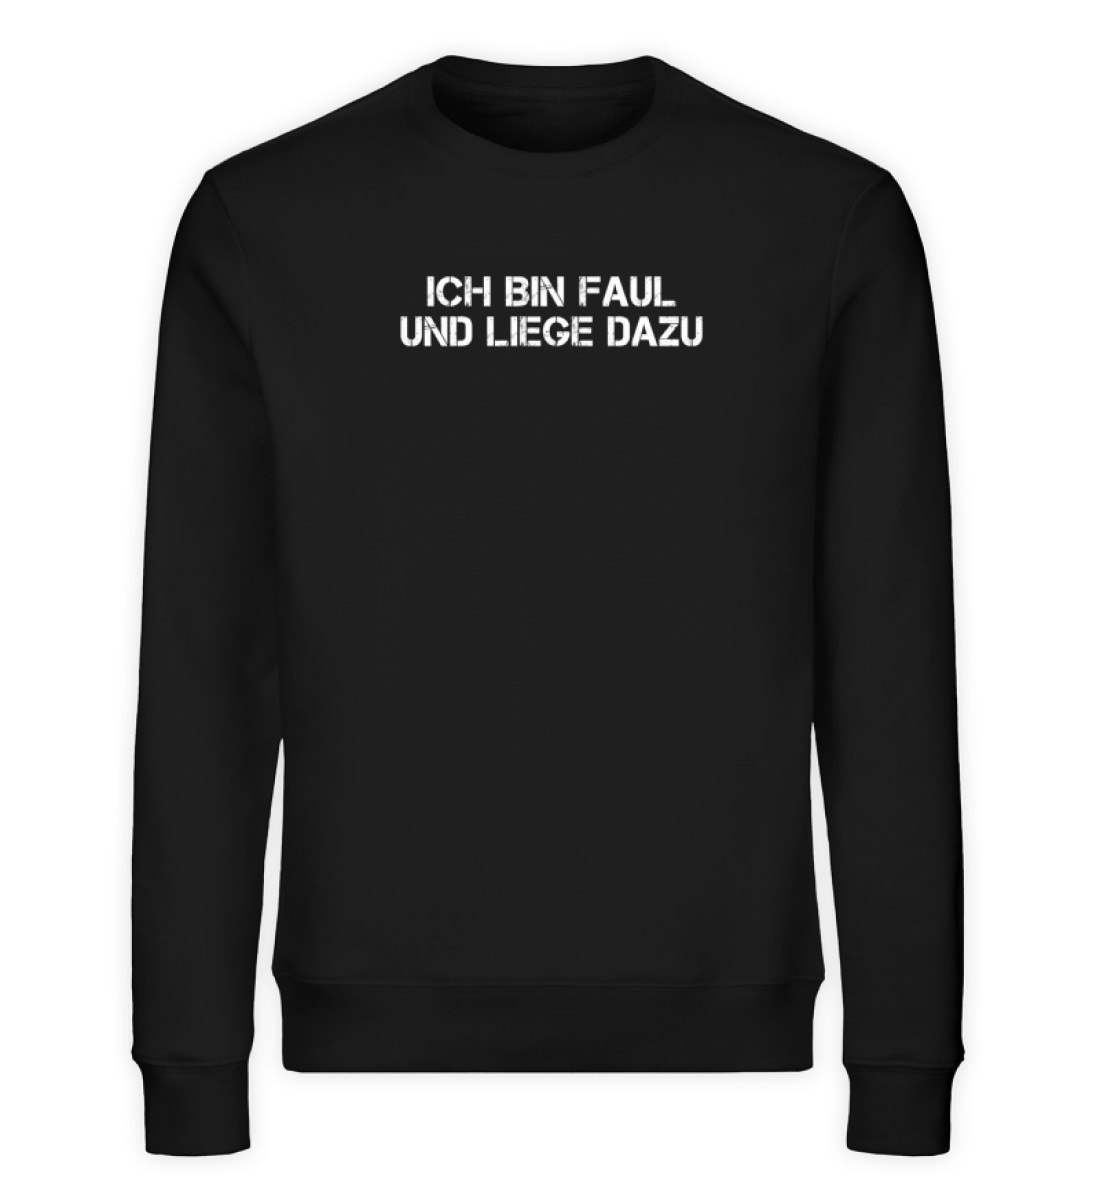 Ich bin faul und liege dazu - Unisex Organic Sweatshirt-16